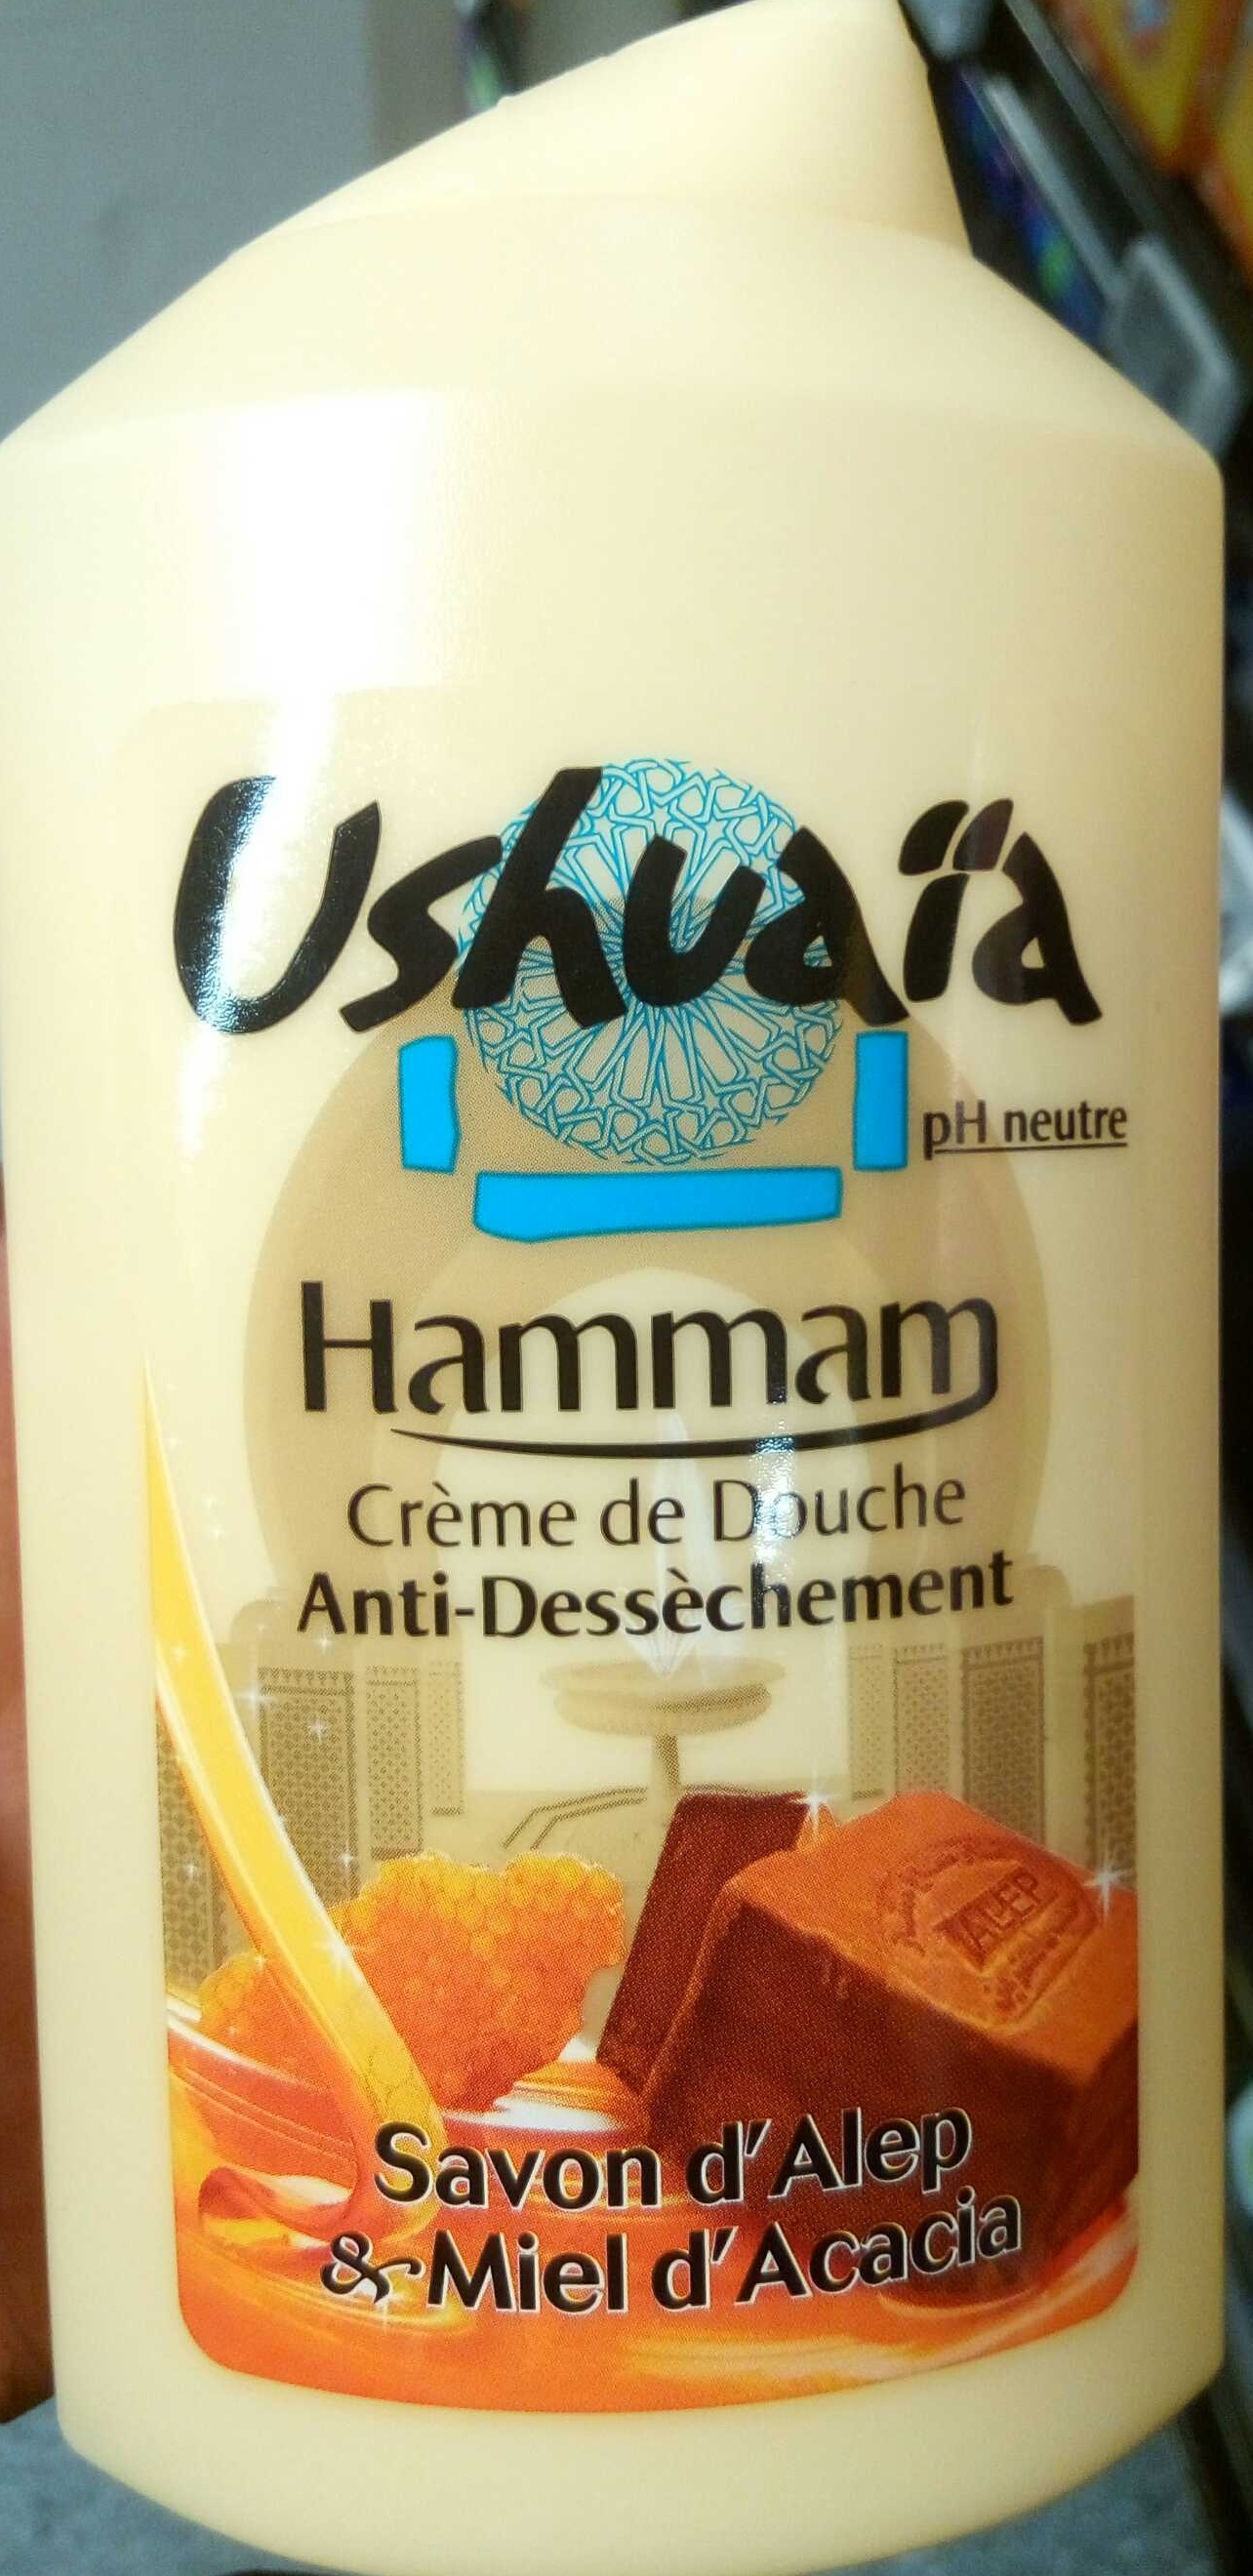 Crème de Douche anti-dessèchement Hammam Savon d'Alep & Miel d'Acacia - Produto - fr